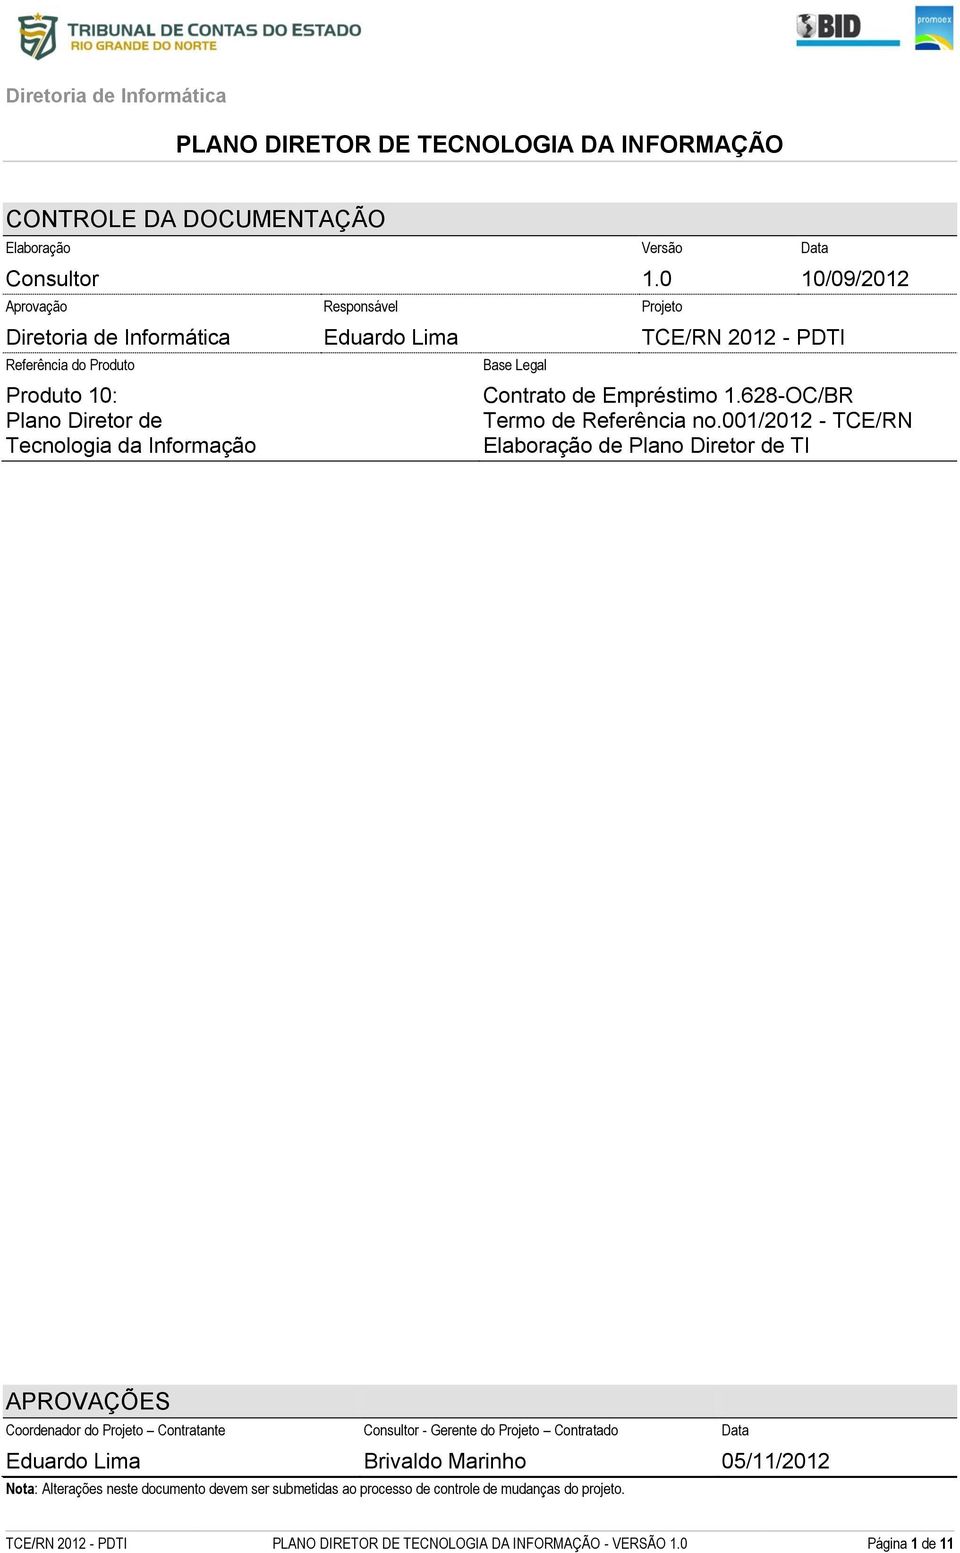 001/2012 - TCE/RN Elaboração de Plano Diretor de TI APROVAÇÕES Coordenador do Projeto Contratante Consultor - Gerente do Projeto Contratado Eduardo Lima